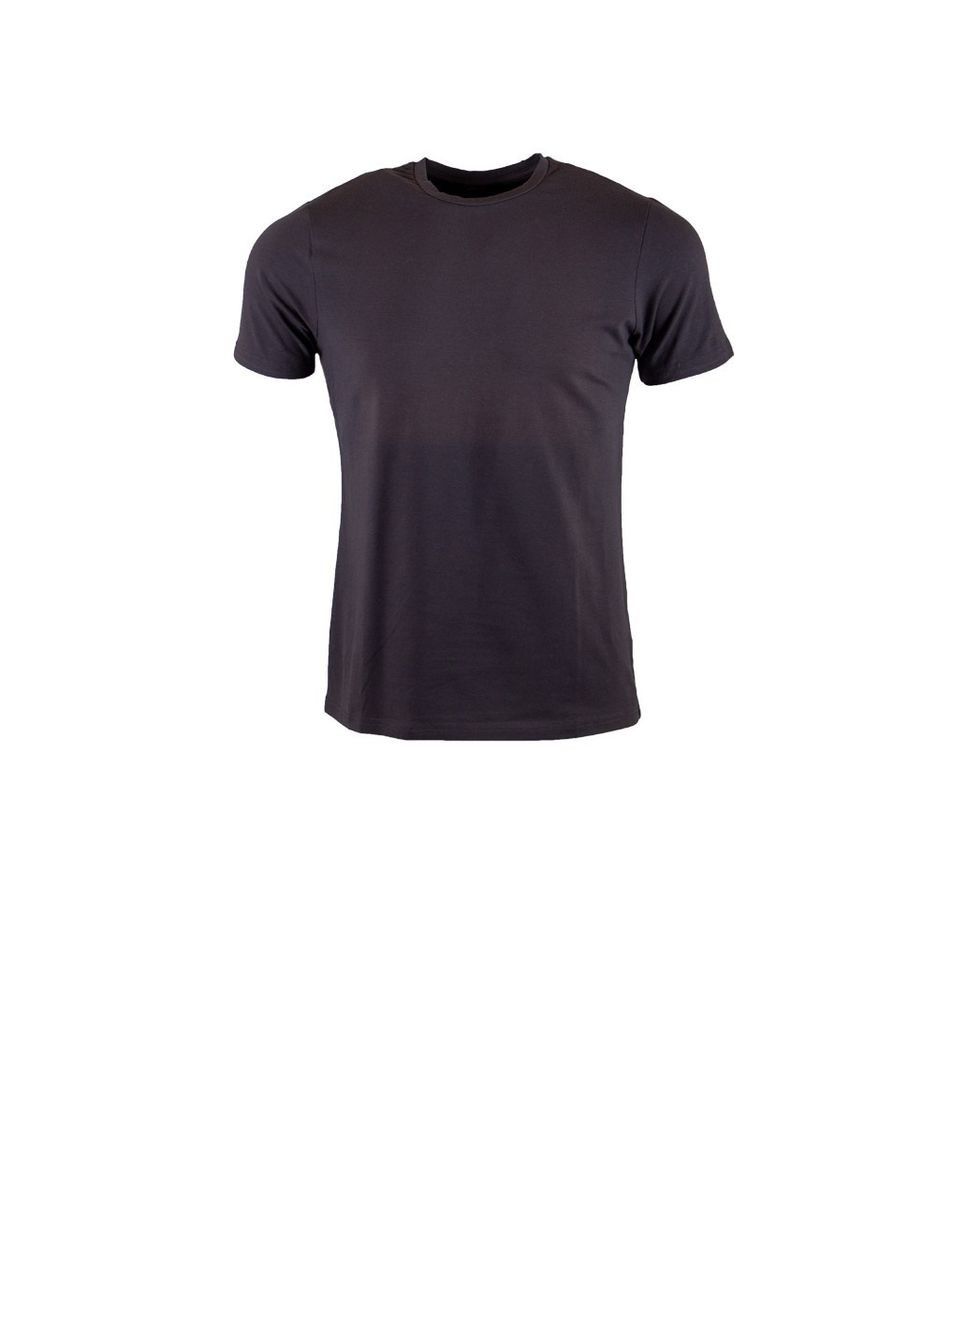 Темно-серая футболка итальянского бренда Sorbino